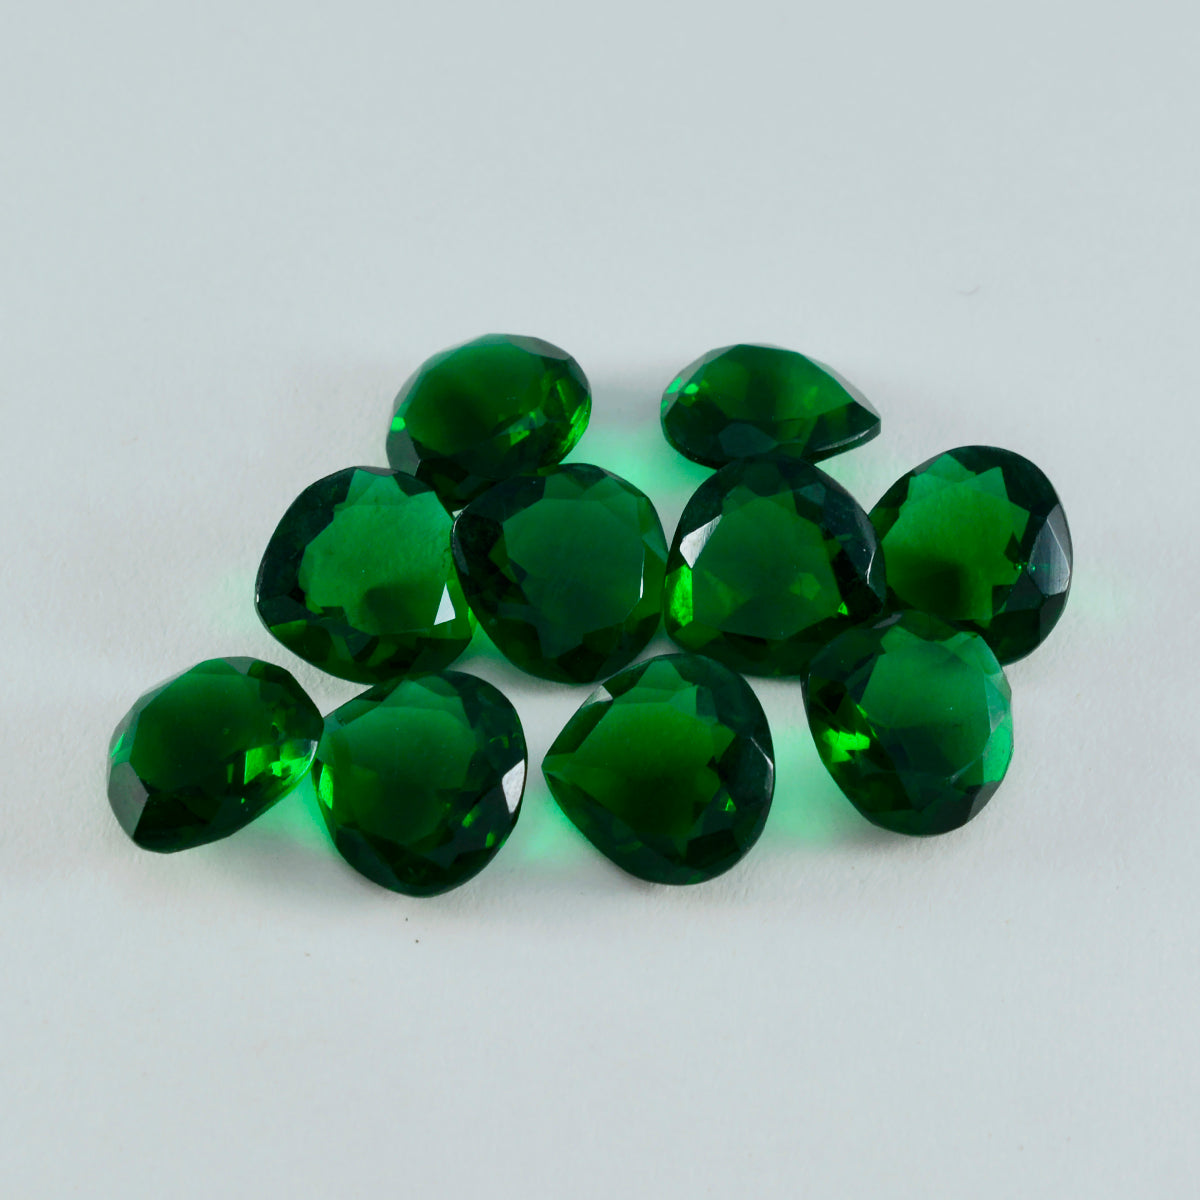 Riyogems 1 pieza Esmeralda verde CZ facetada 11x11mm forma de corazón gemas sueltas de calidad sorprendente